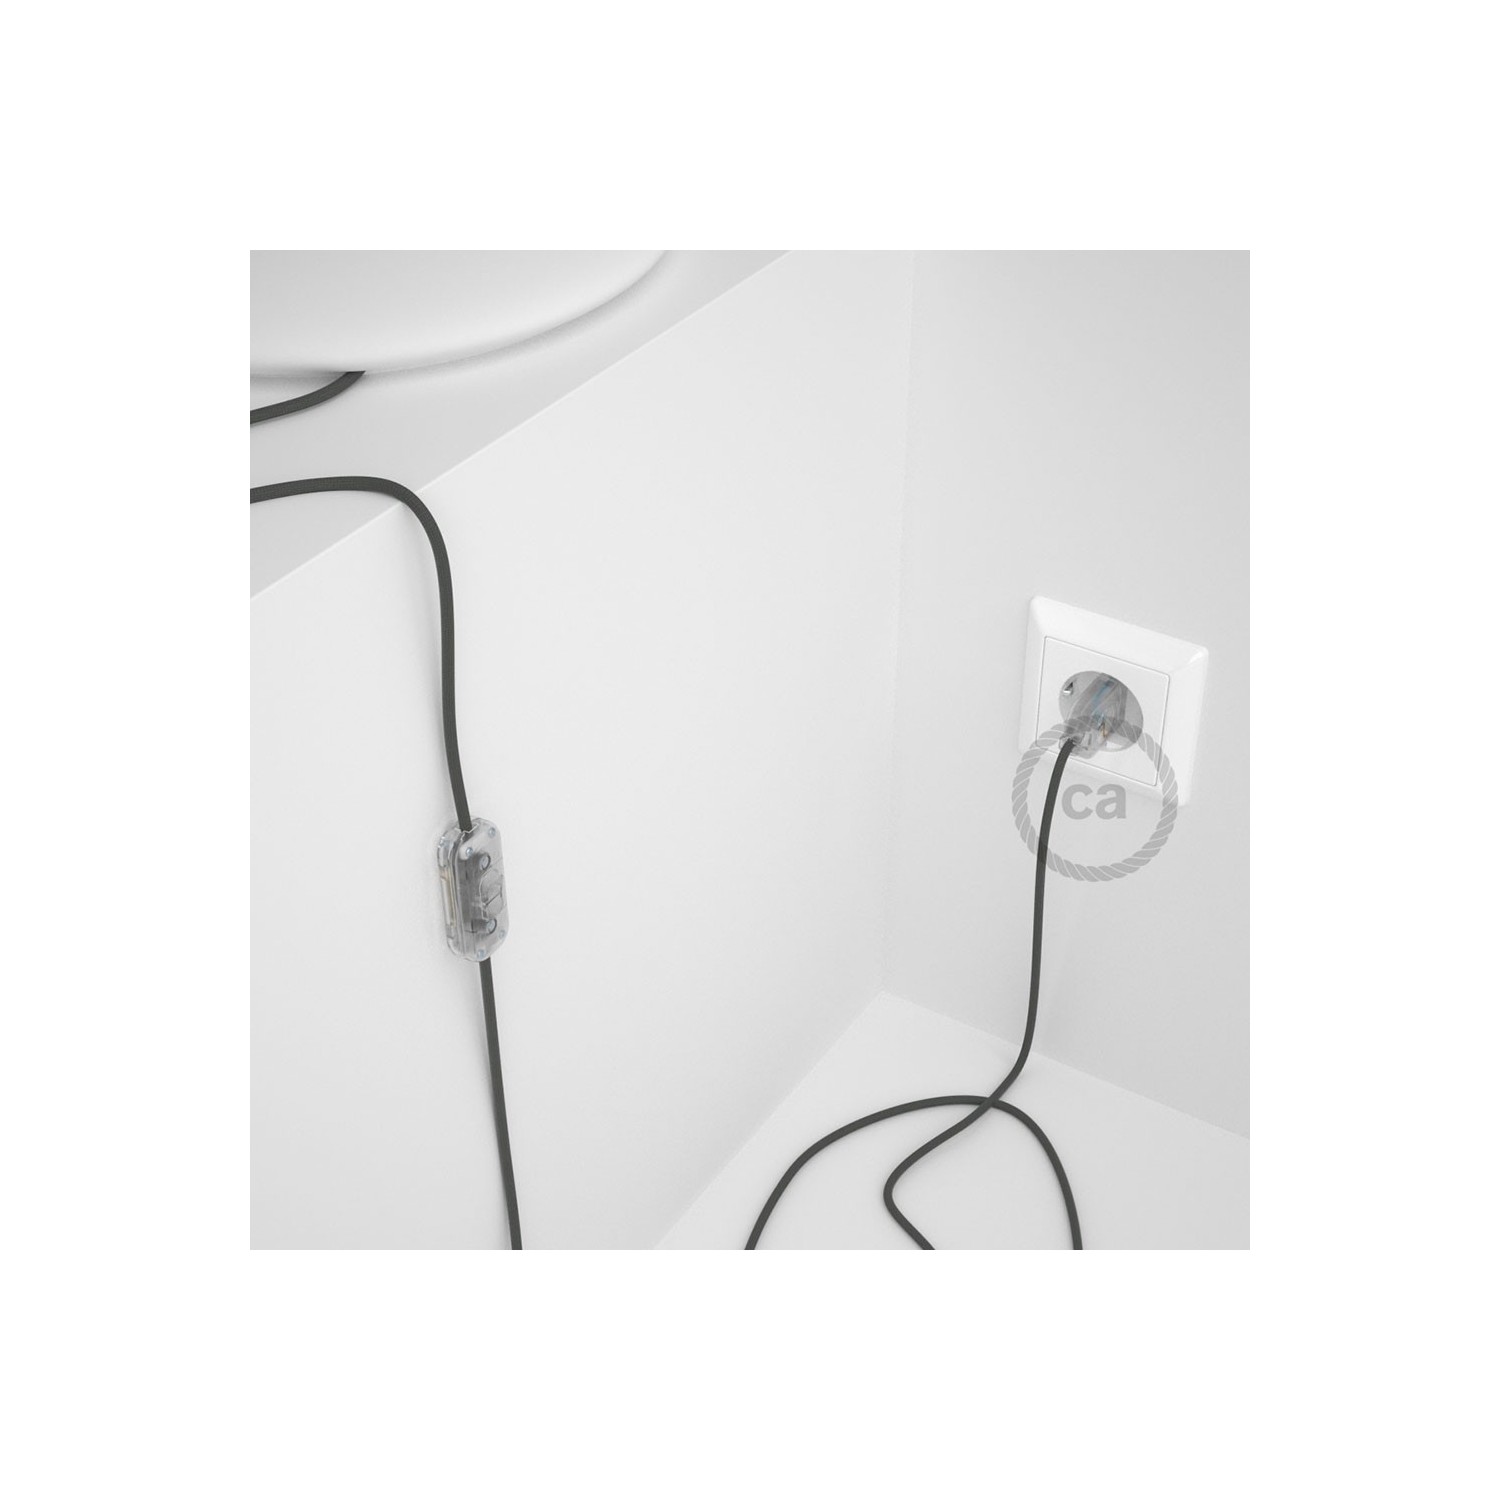 Cableado para lámpara, cable RM03 Efecto Seda Gris 1,8m. Elige tu el color de la clavija y del interruptor!